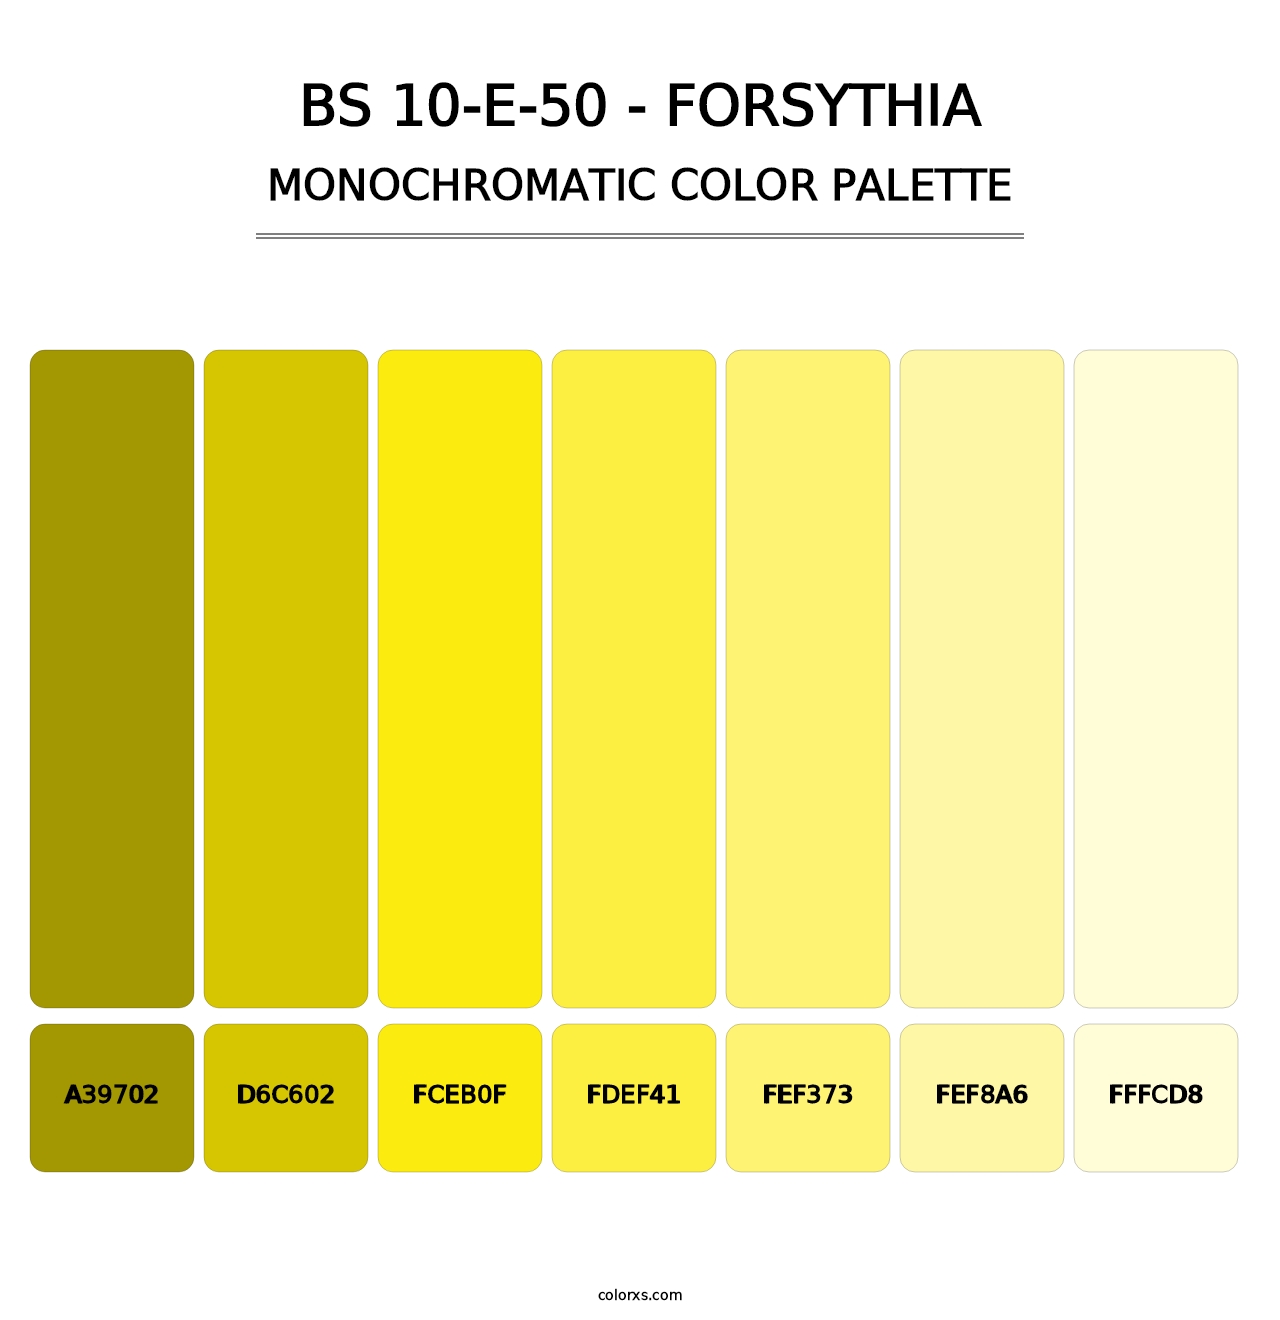 BS 10-E-50 - Forsythia - Monochromatic Color Palette